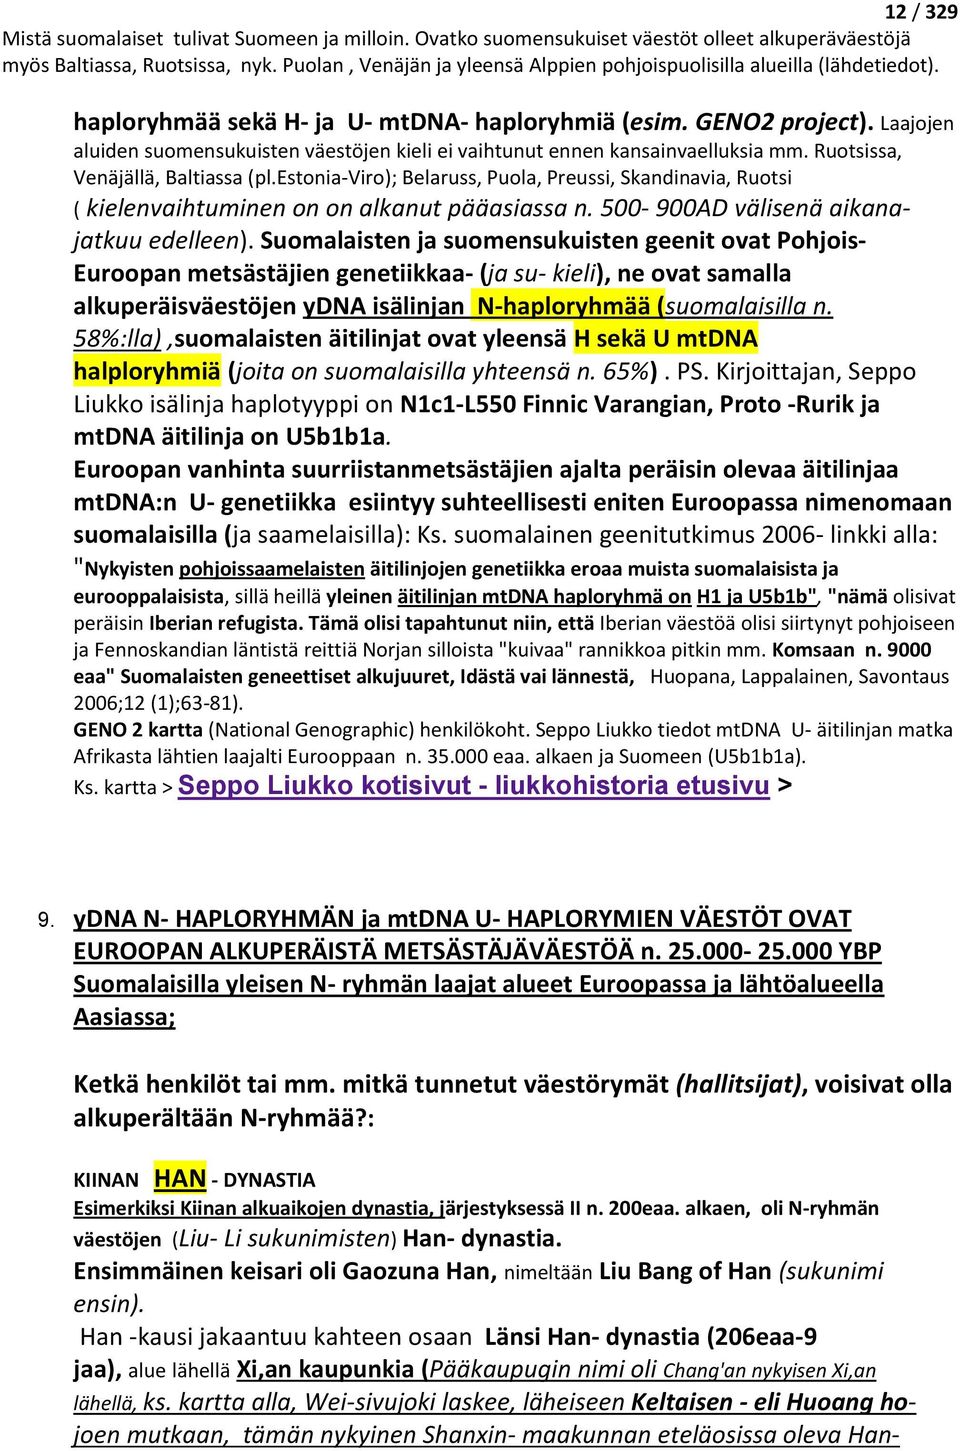 Suomalaisten ja suomensukuisten geenit ovat Pohjois- Euroopan metsästäjien genetiikkaa- (ja su- kieli), ne ovat samalla alkuperäisväestöjen ydna isälinjan N-haploryhmää (suomalaisilla n.